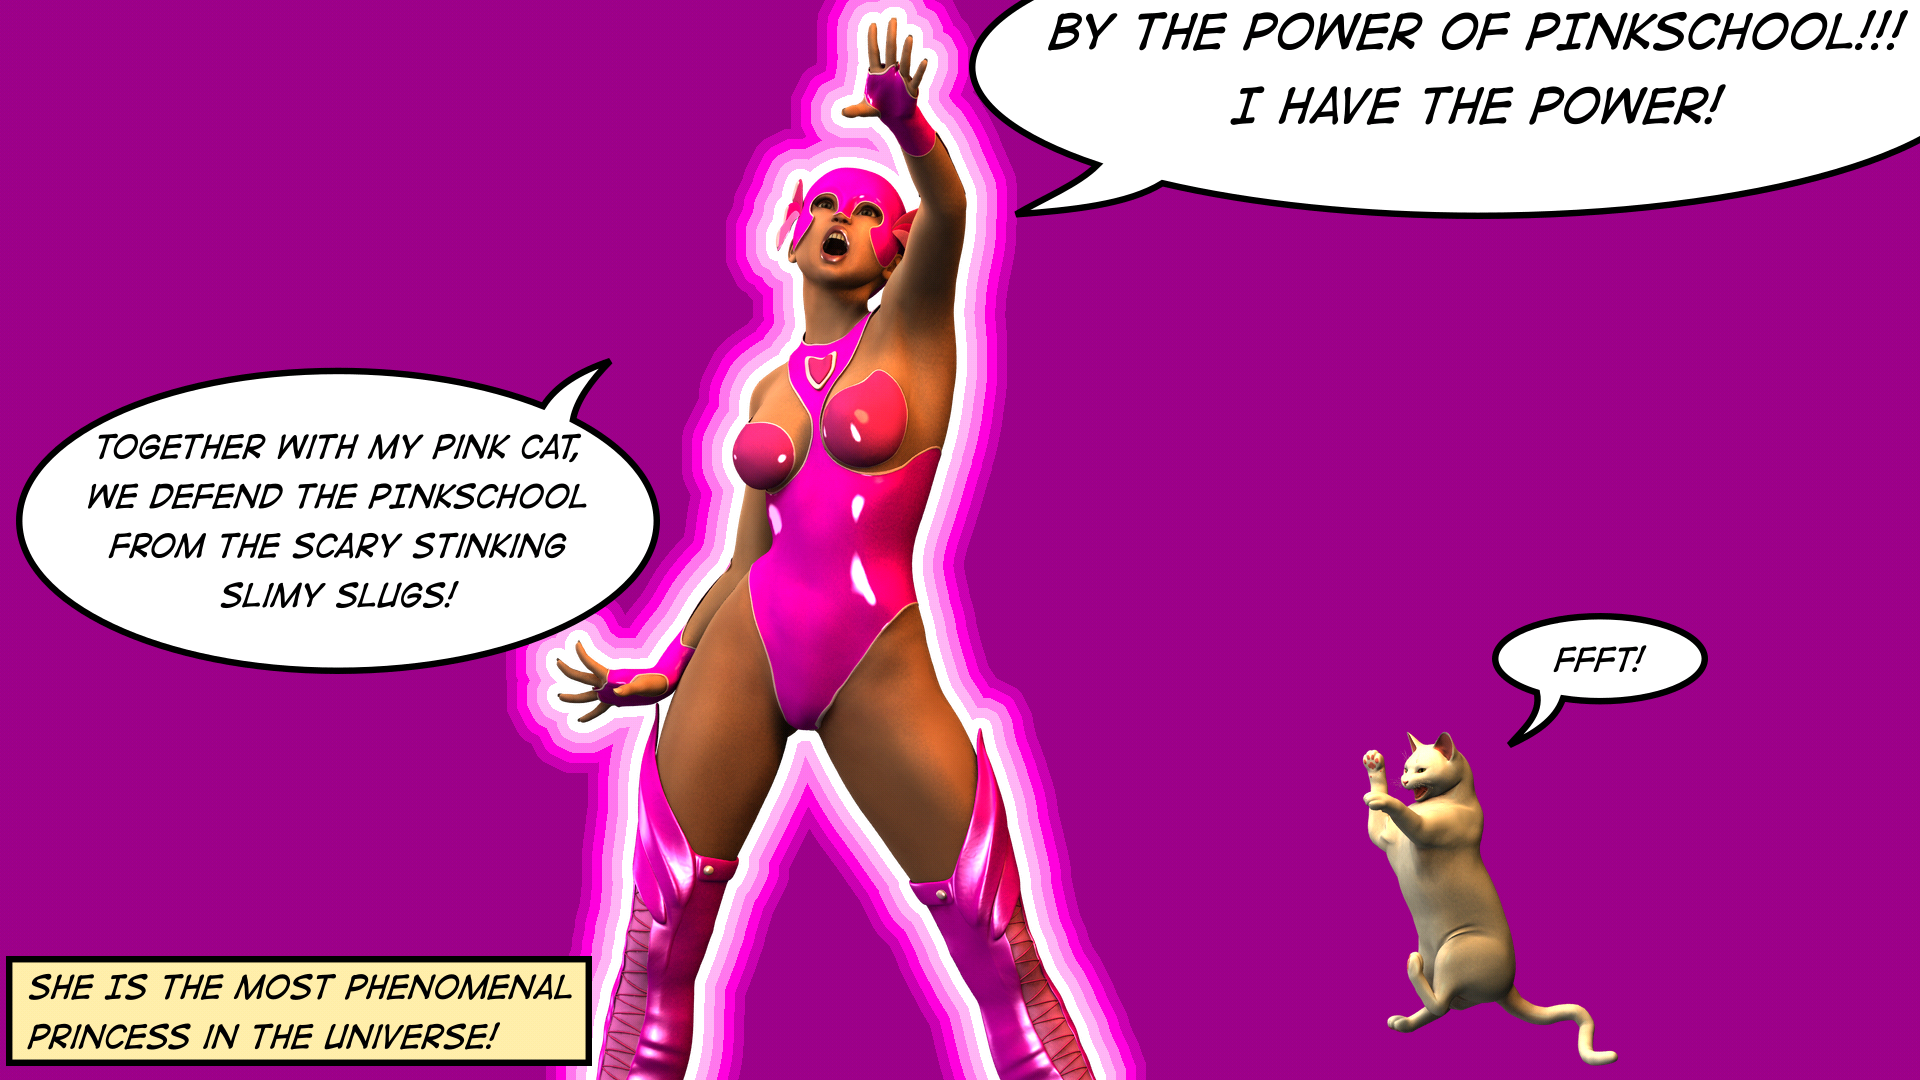 Phenomenally powerful princess Pink vs the scary stinking slimy slugs